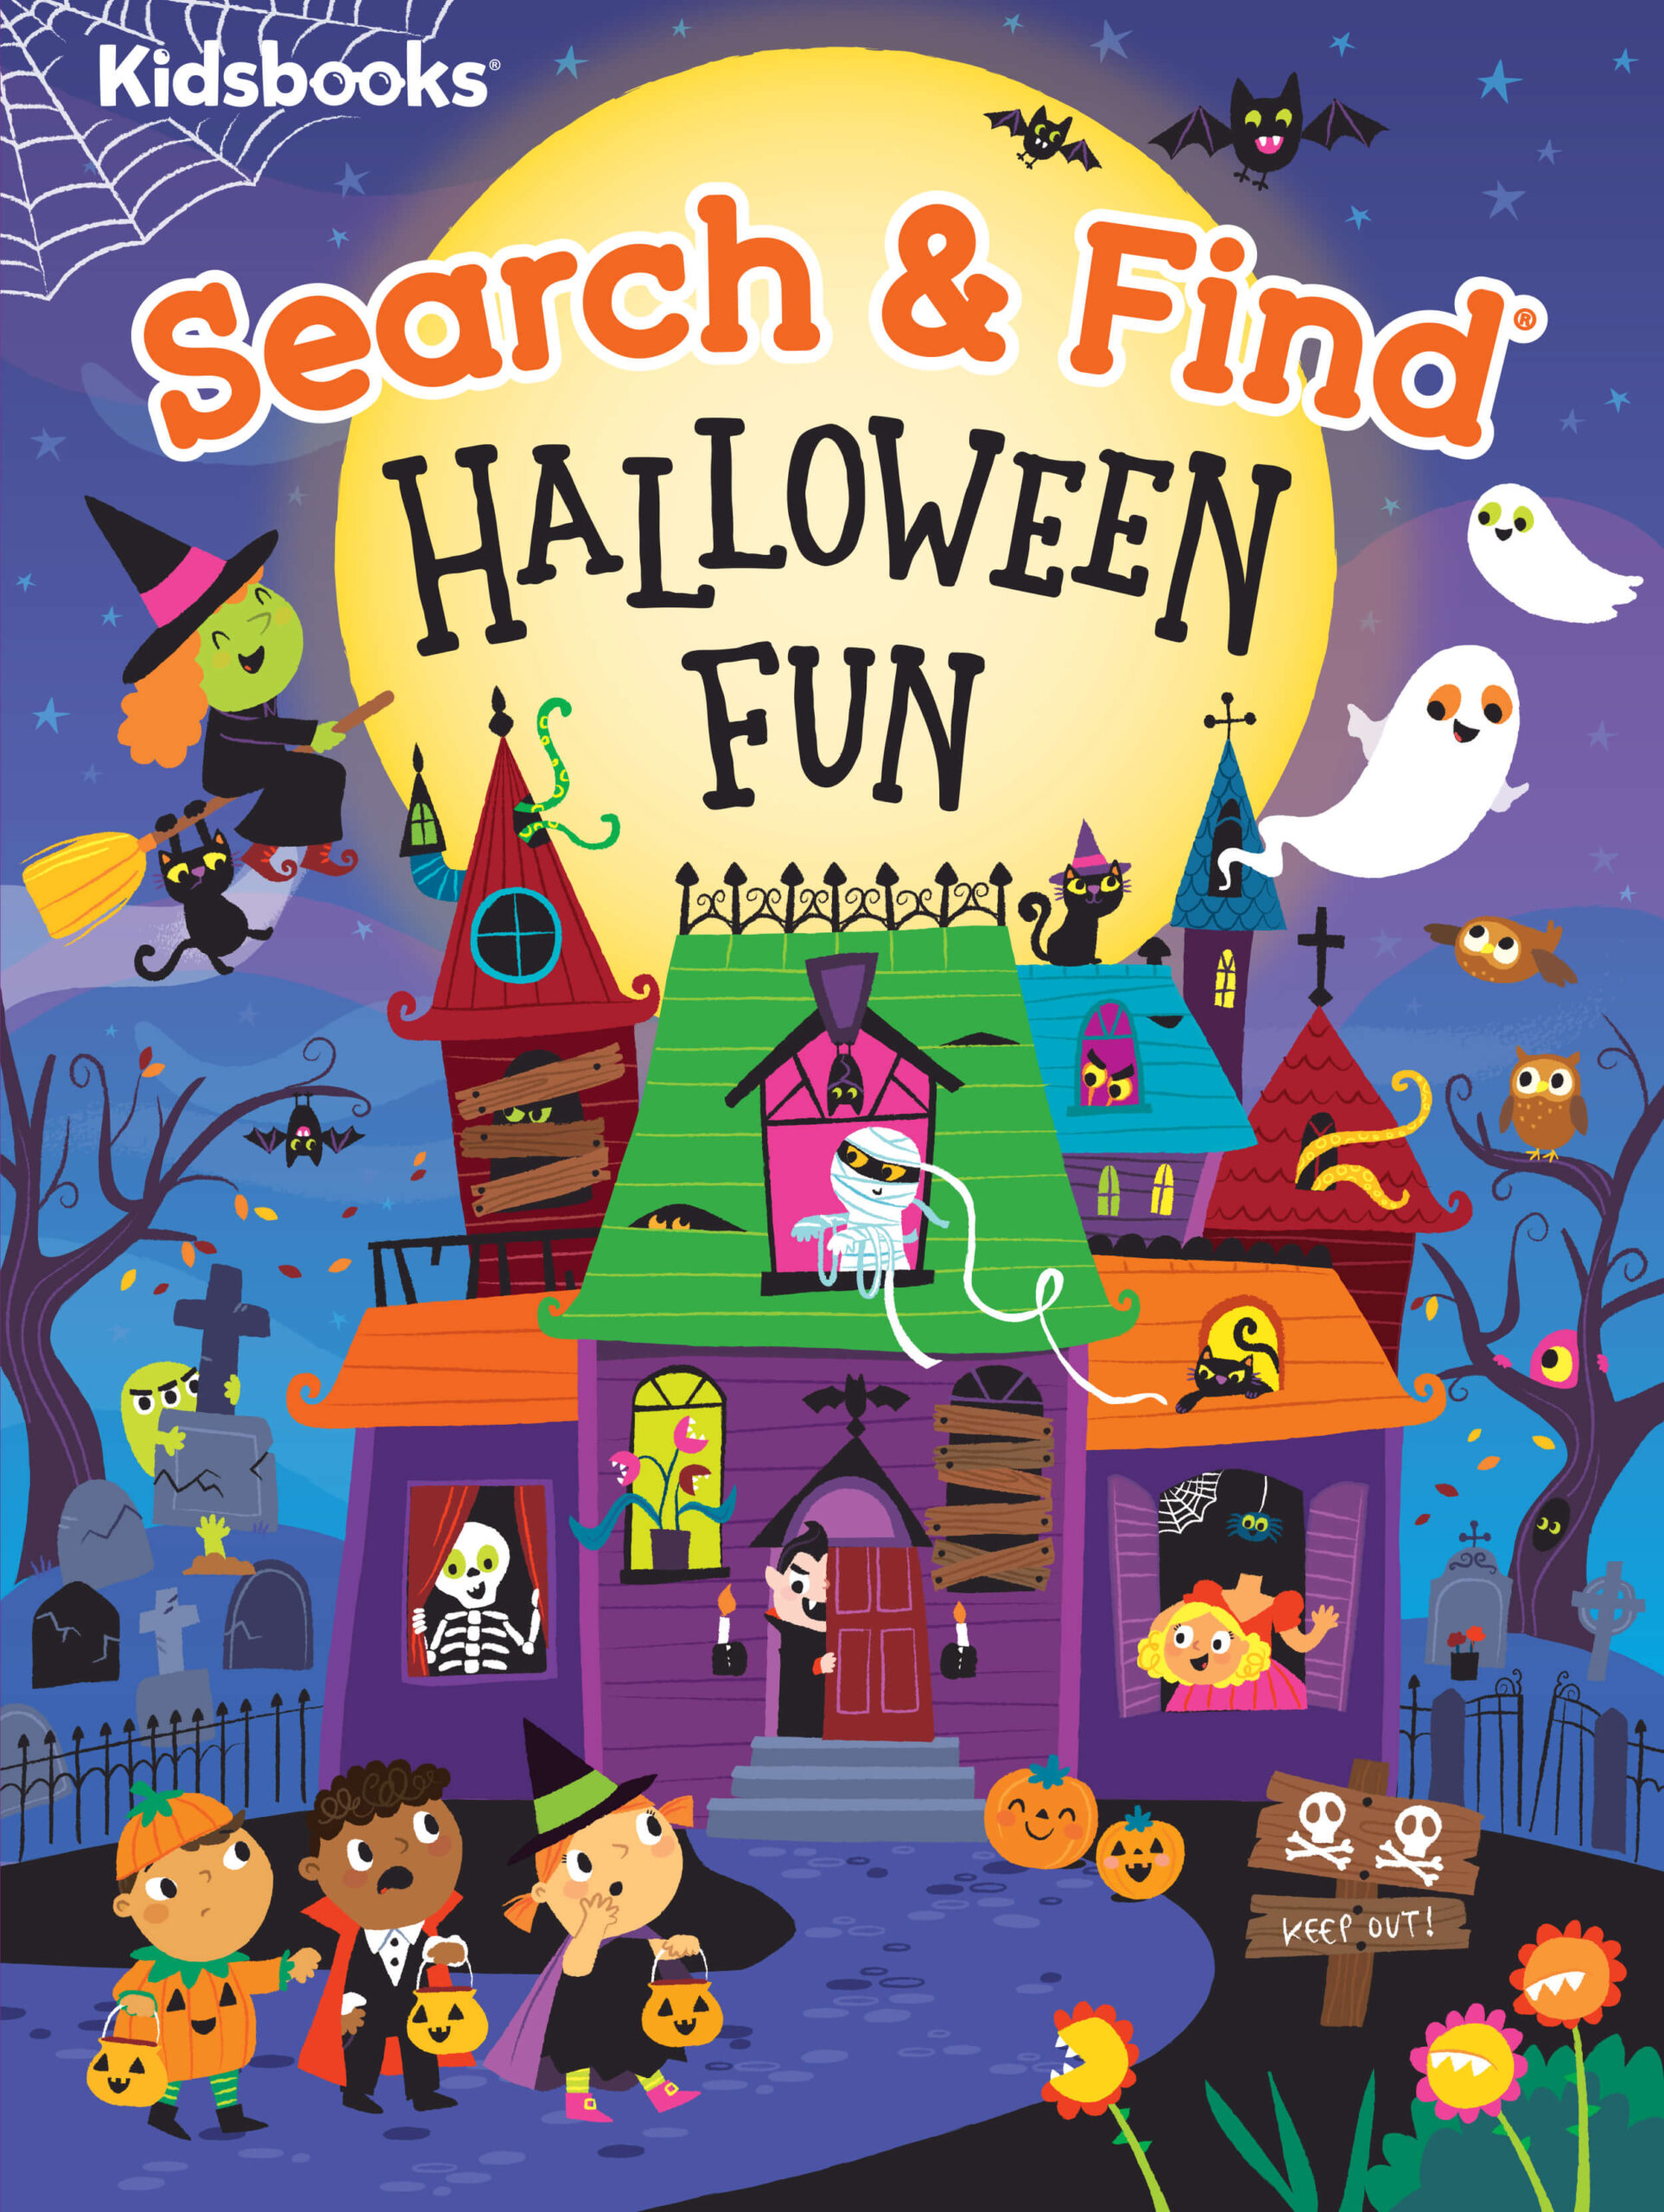 Search & Find: Halloween Fun